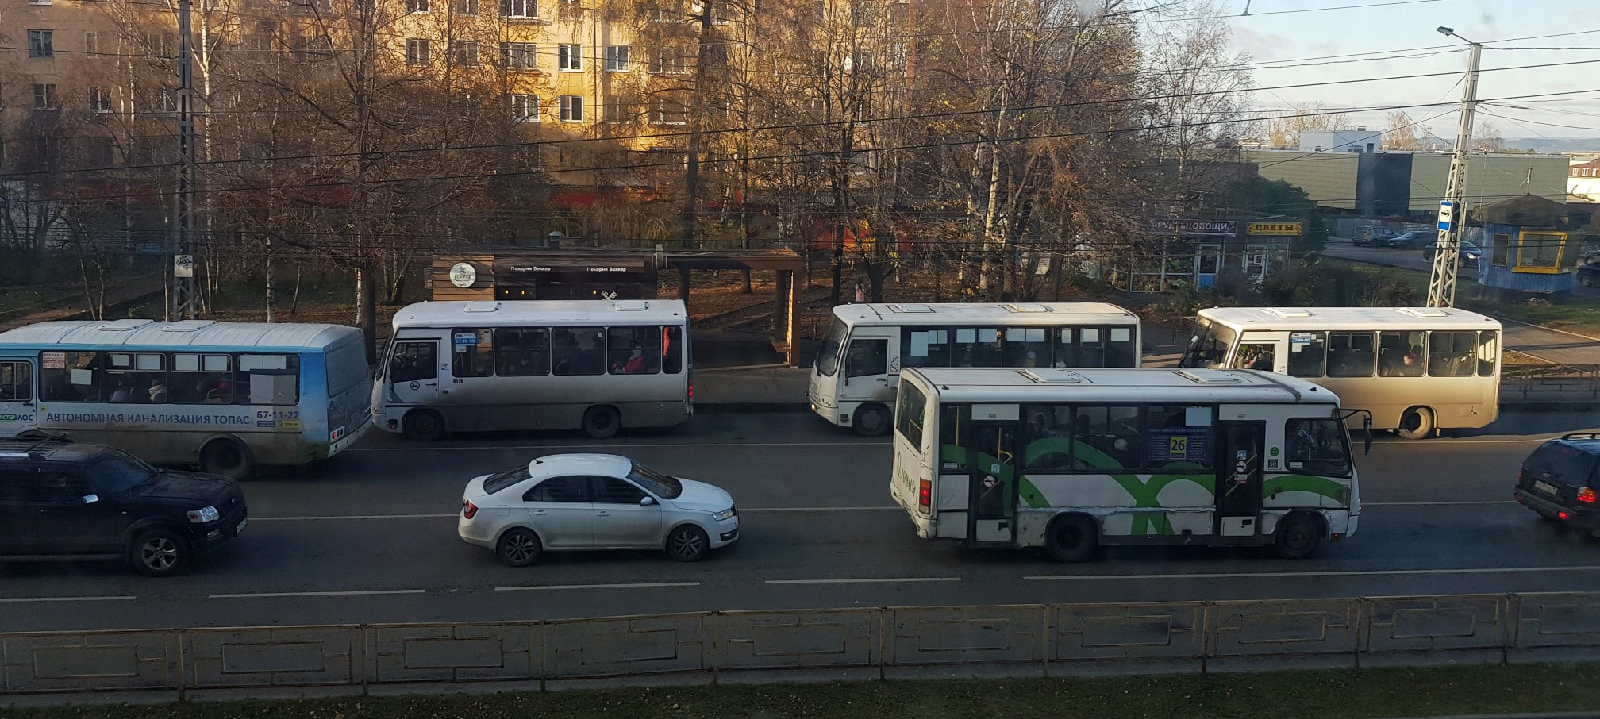 Частные перевозчики заявили, что будут участвовать в реформе общественного транспорта в Петрозаводске наравне с чиновниками и депутатами